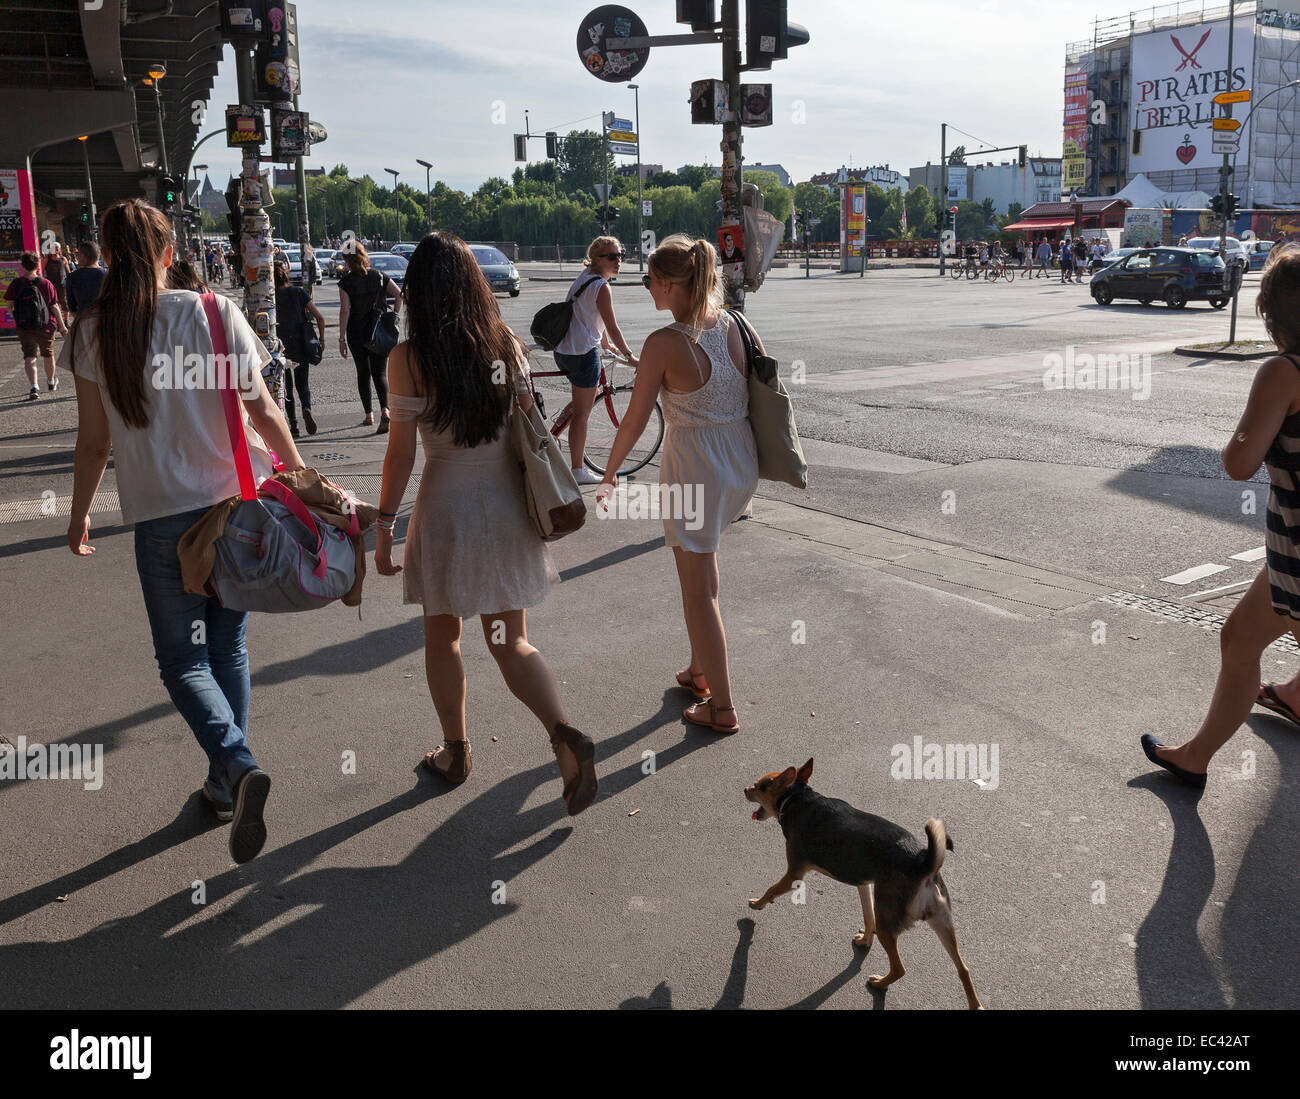 Pedestrians crossing a street in Berlin Stock Photo